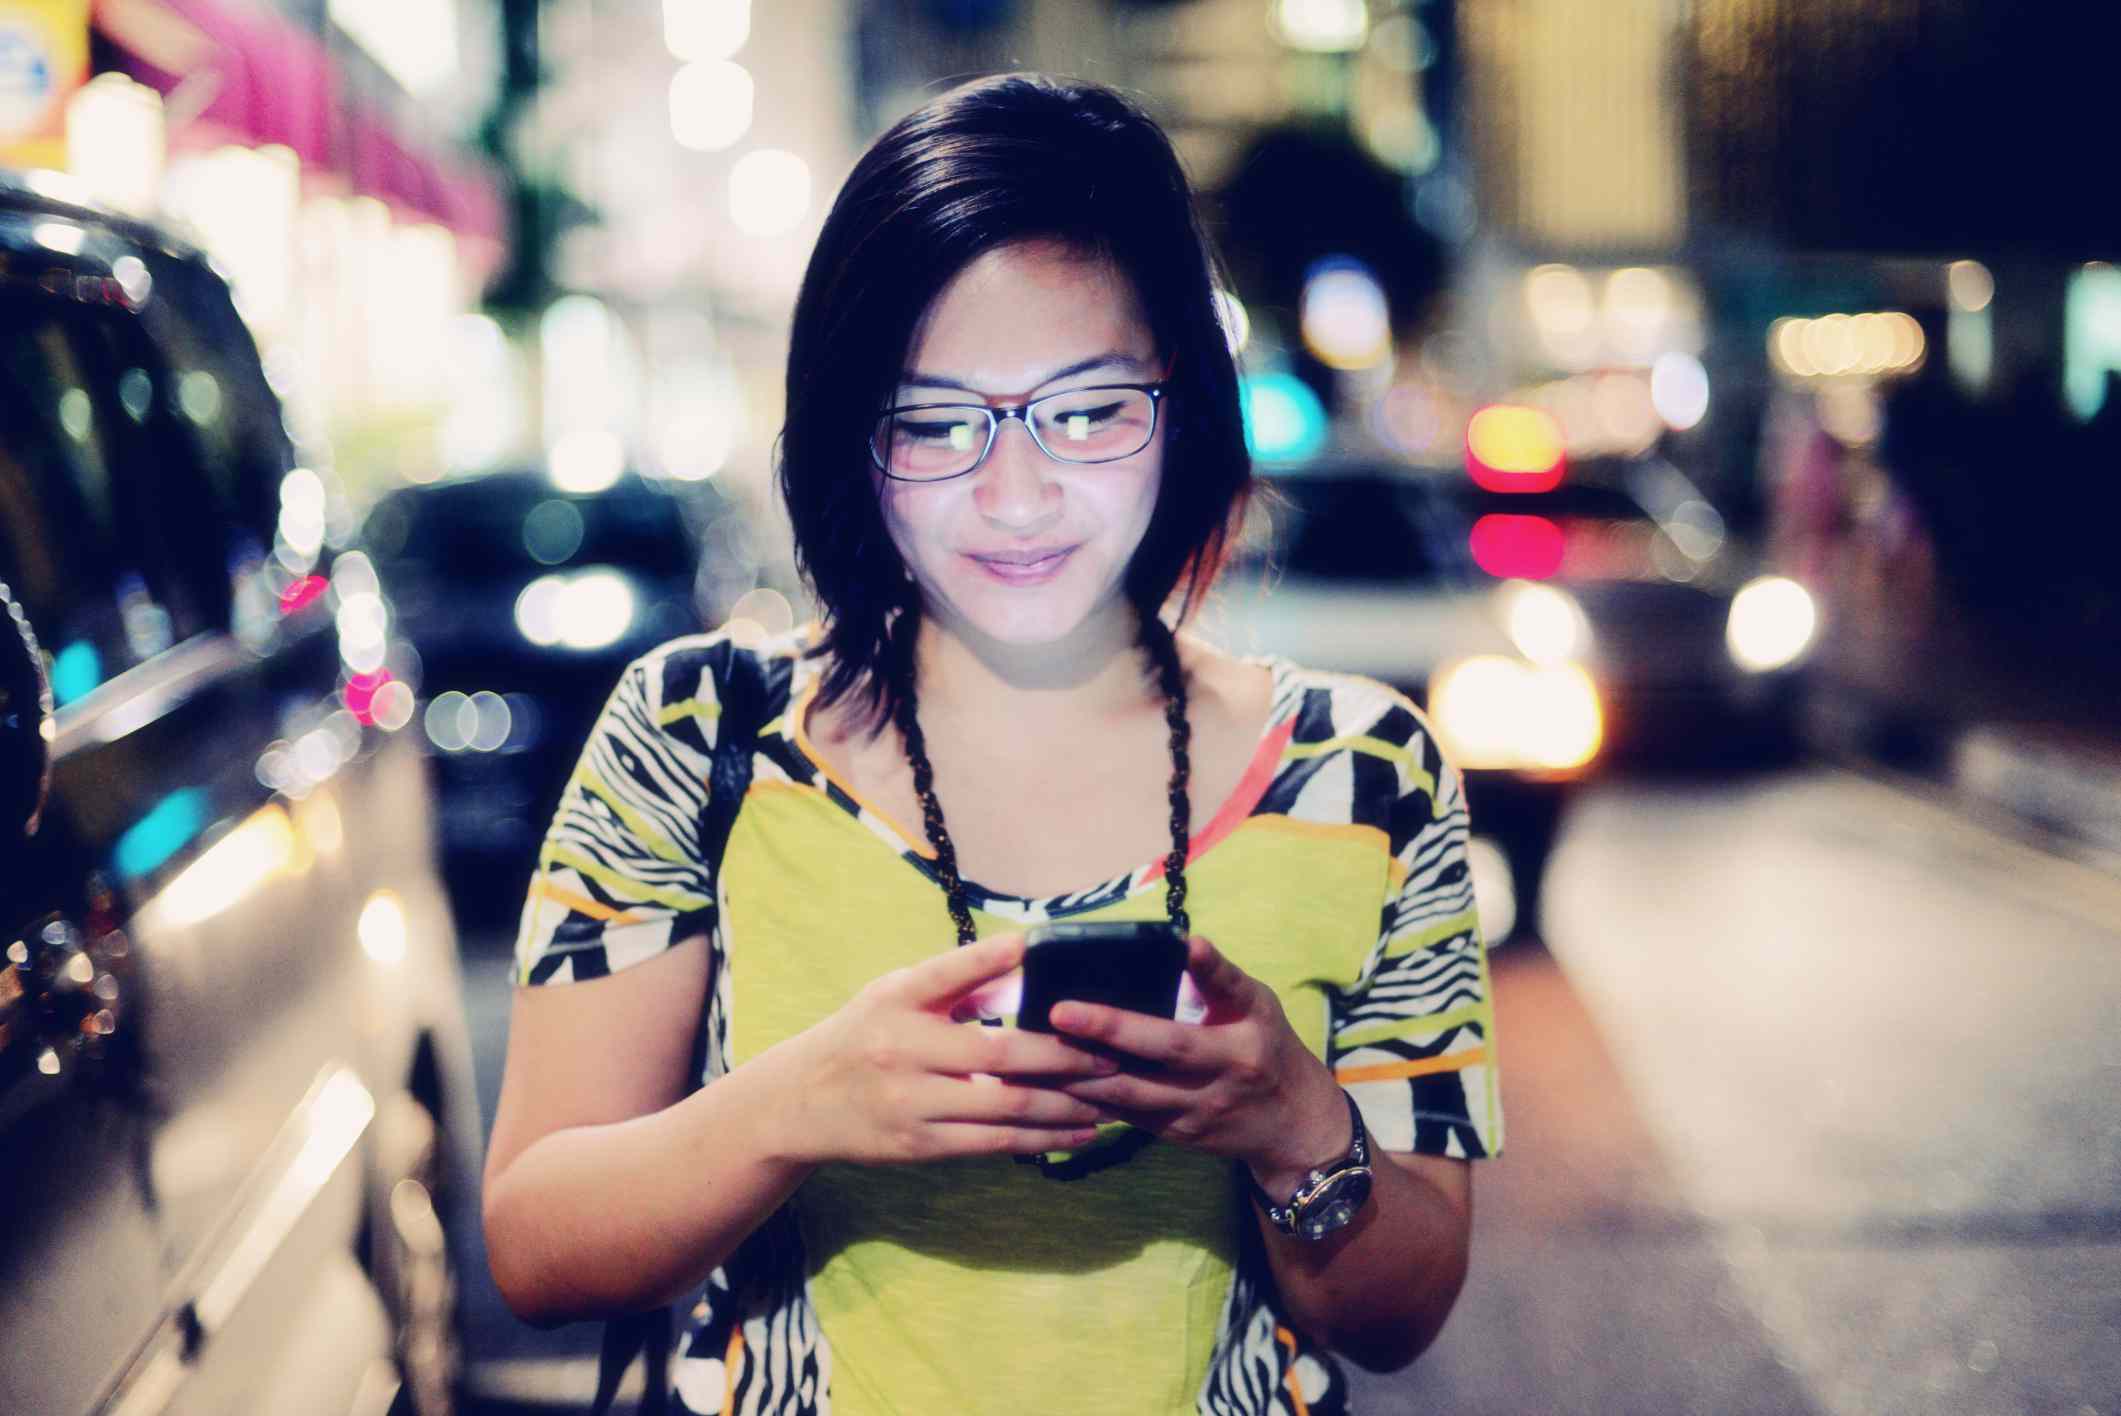 Typy pro chodce na smartphonu na městské ulici v noci